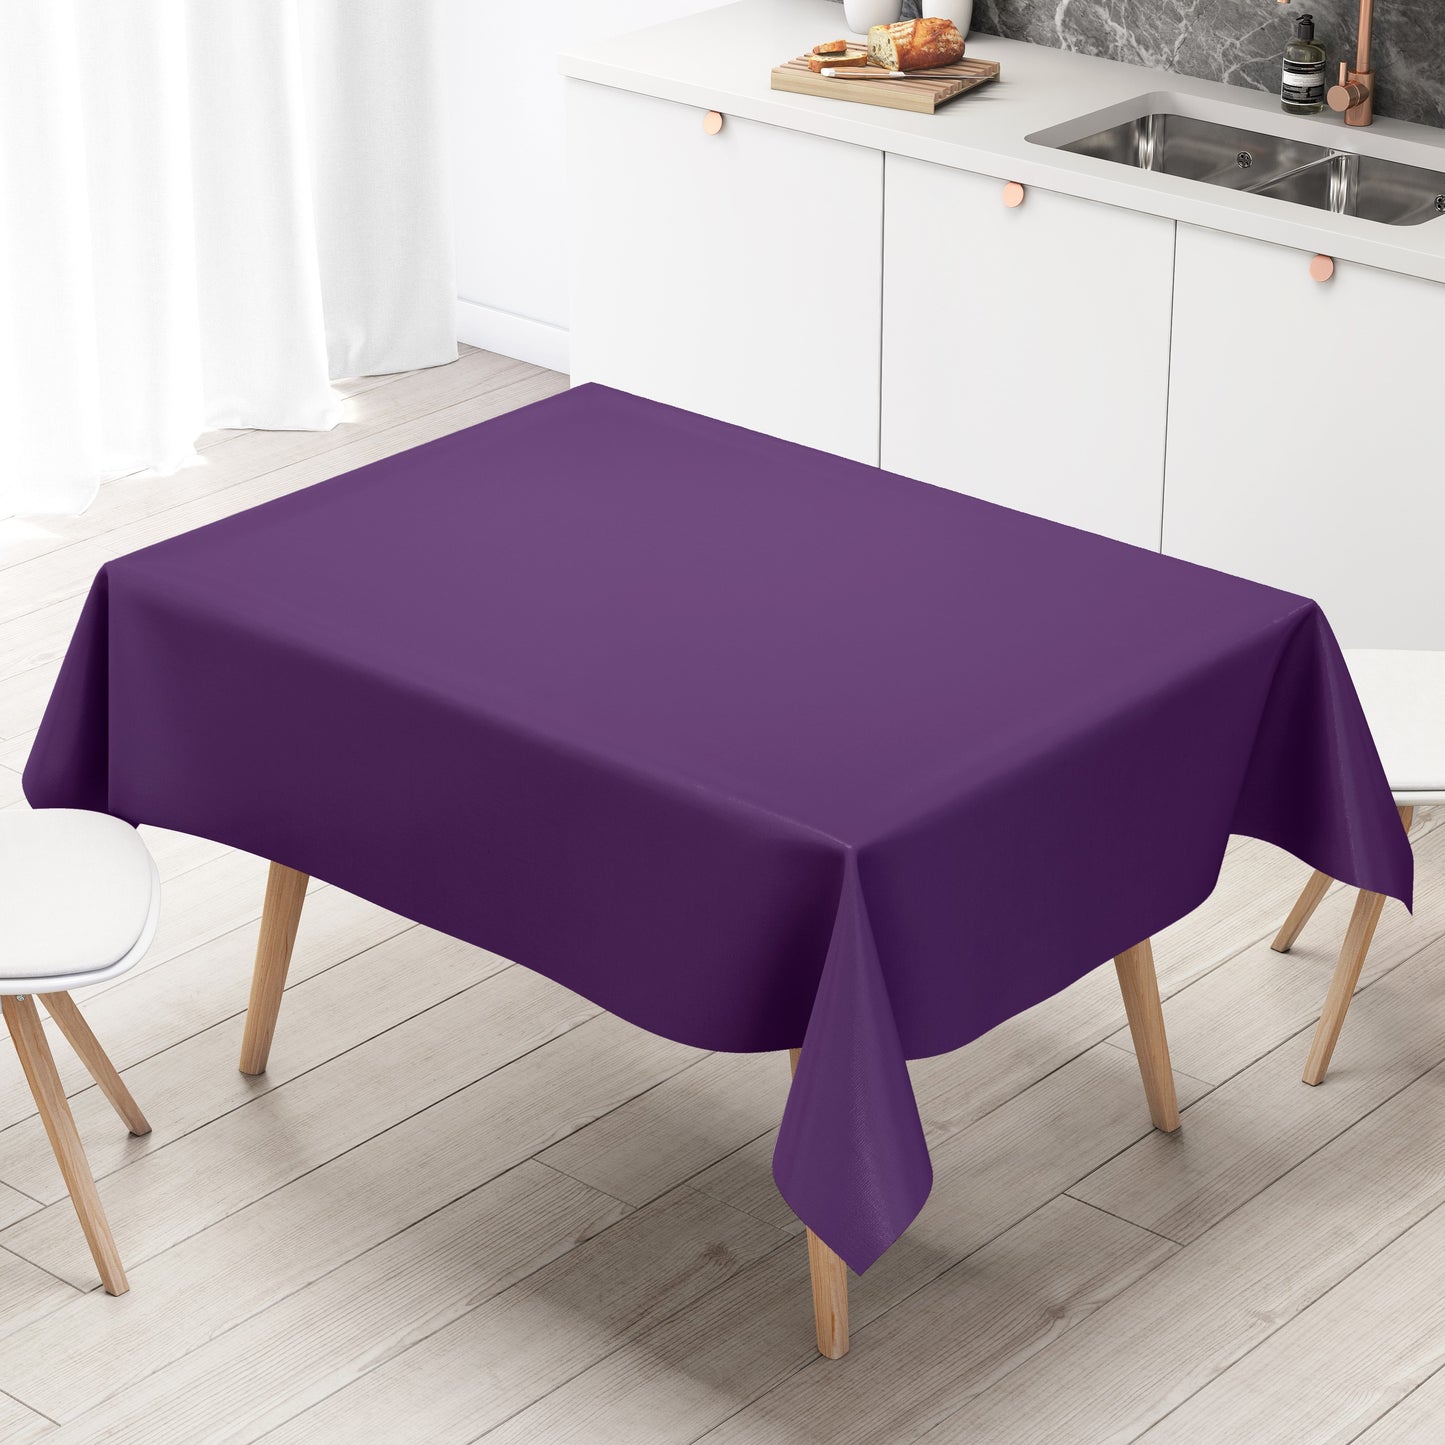 KEVKUS Wachstuch Tischdecke uni 17 einfarbig unifarben lila eckig rund oval